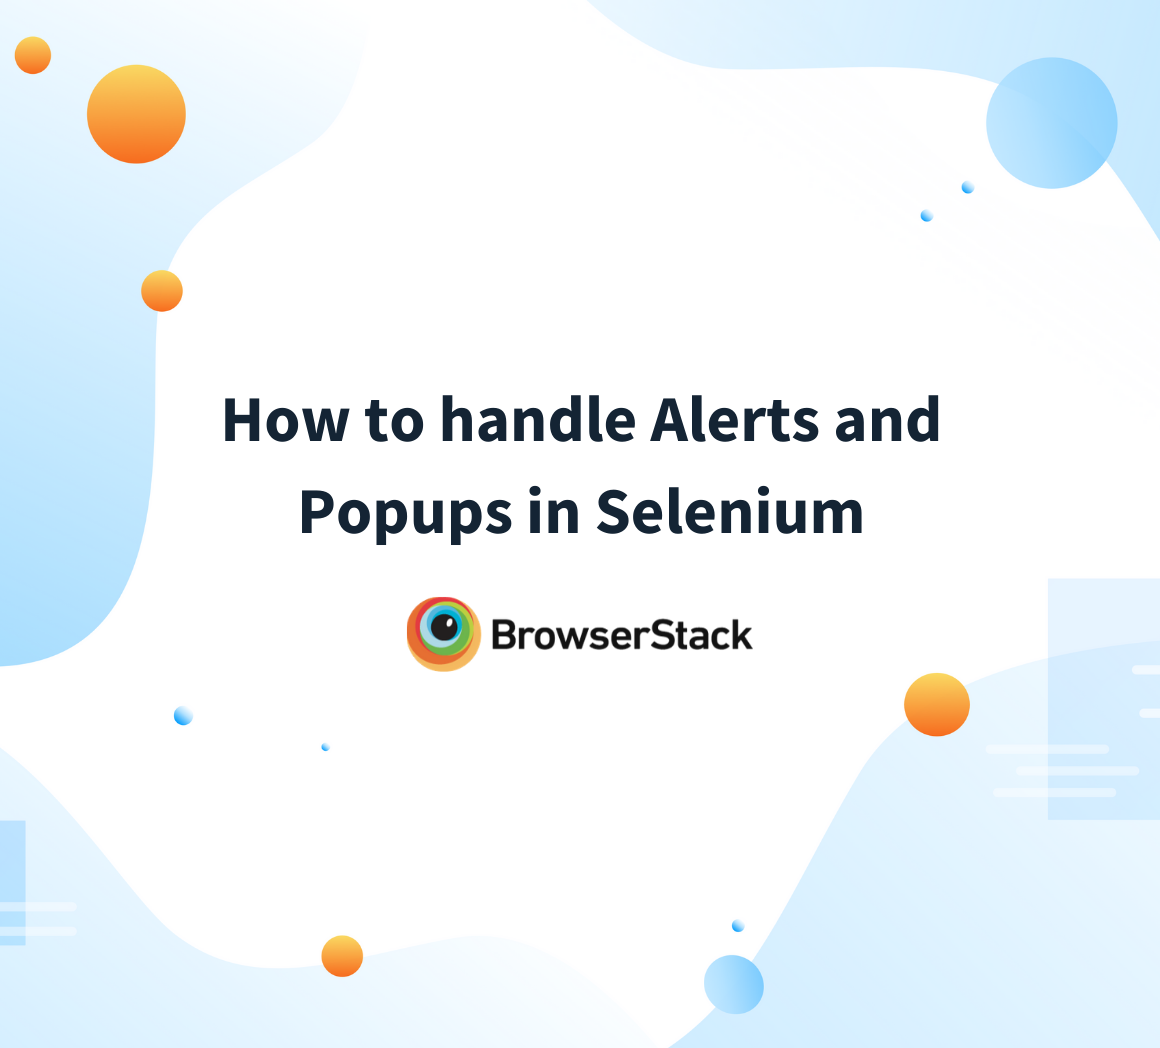 Handling Alerts and Popups in Selenium